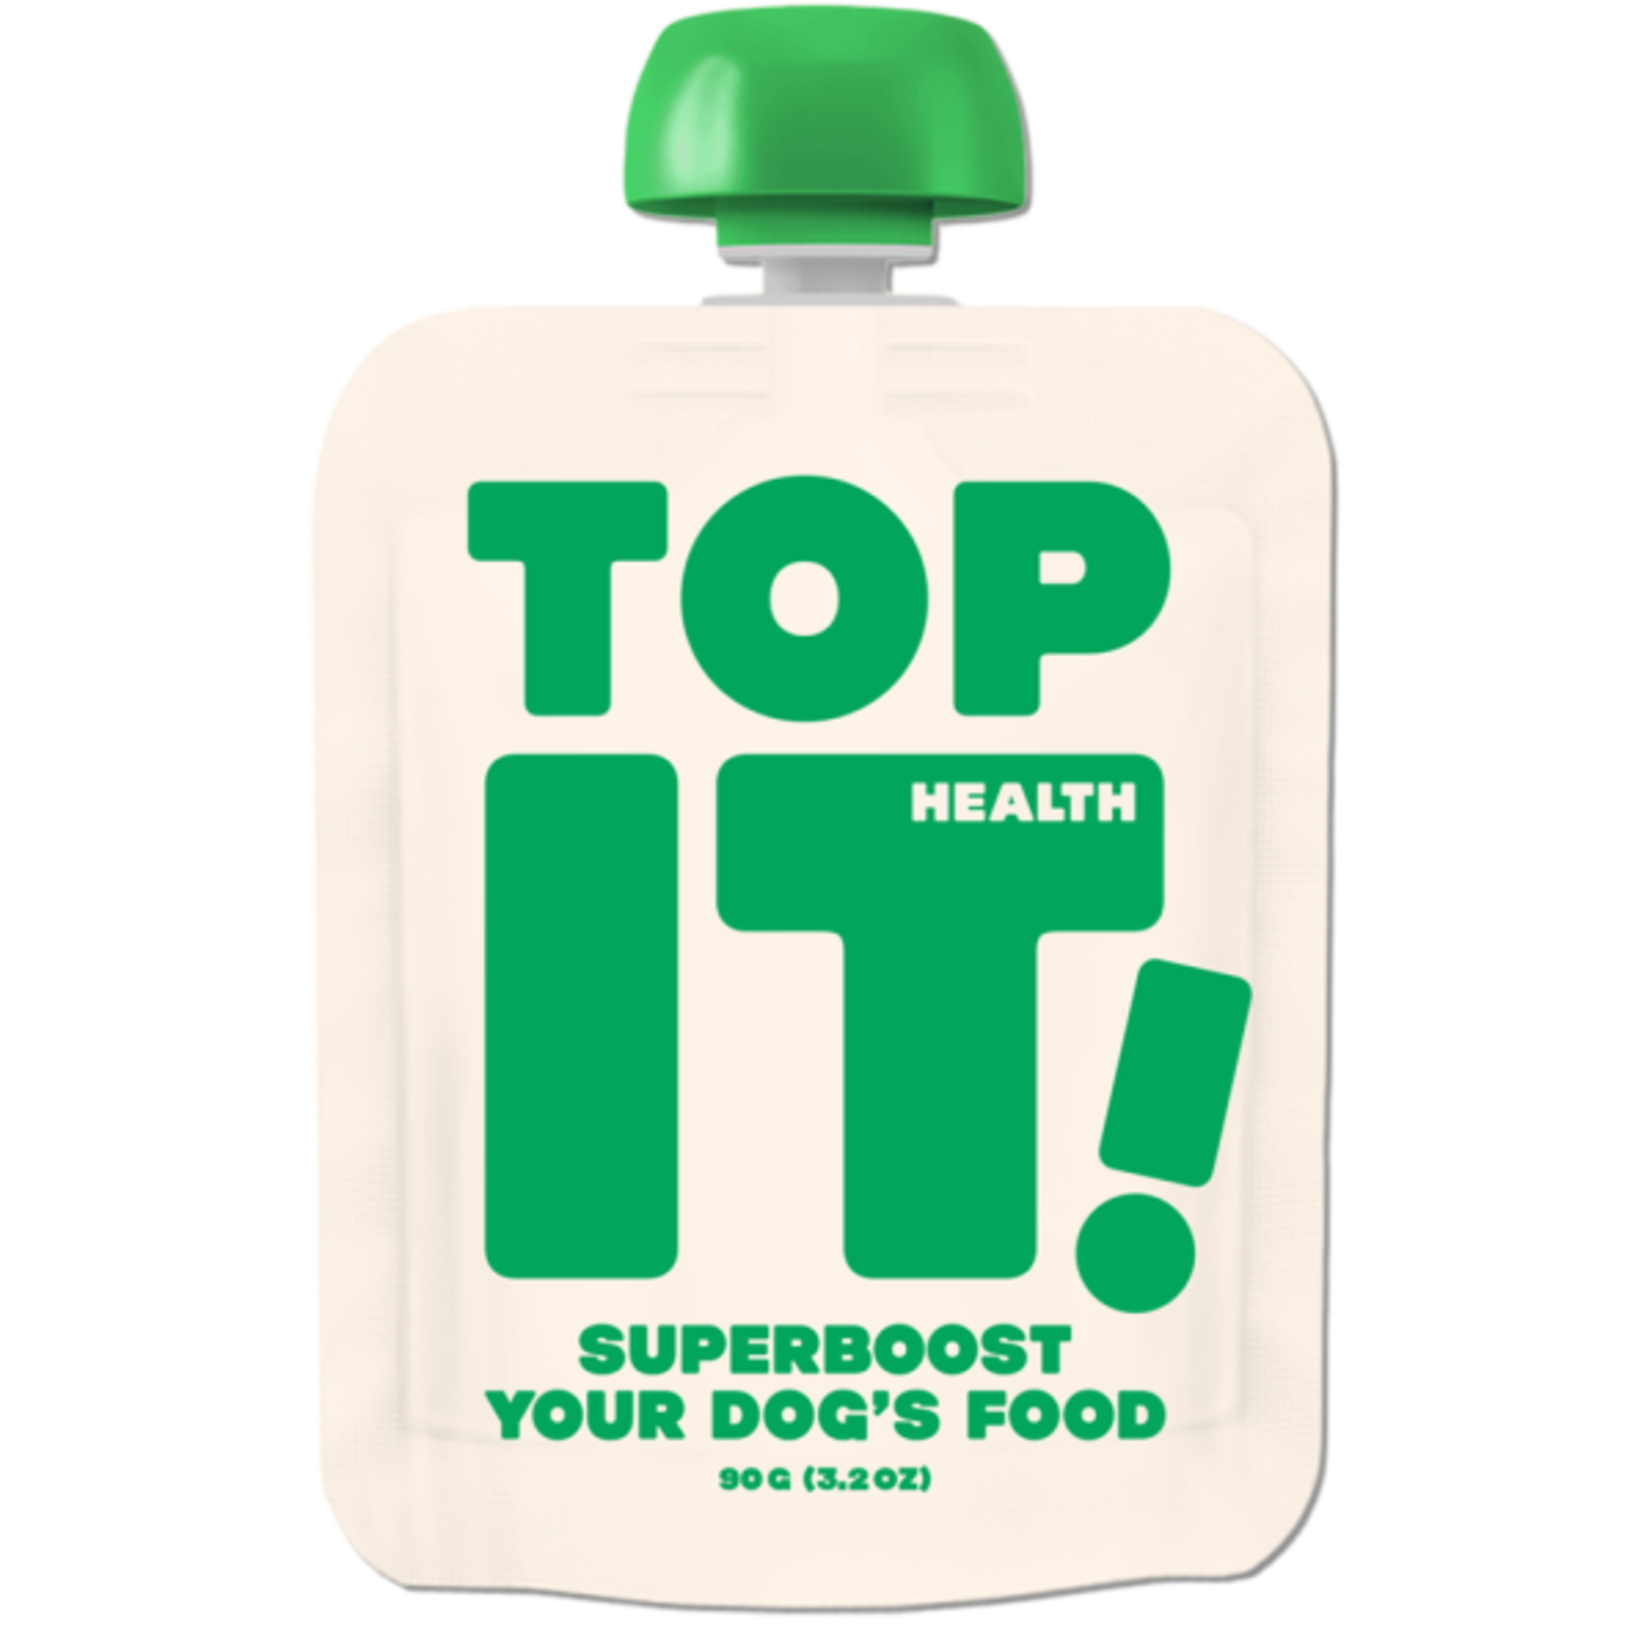 Zip Pet Foods Topit! Health Full Spectrum Food Super Booster 6/3.2 oz